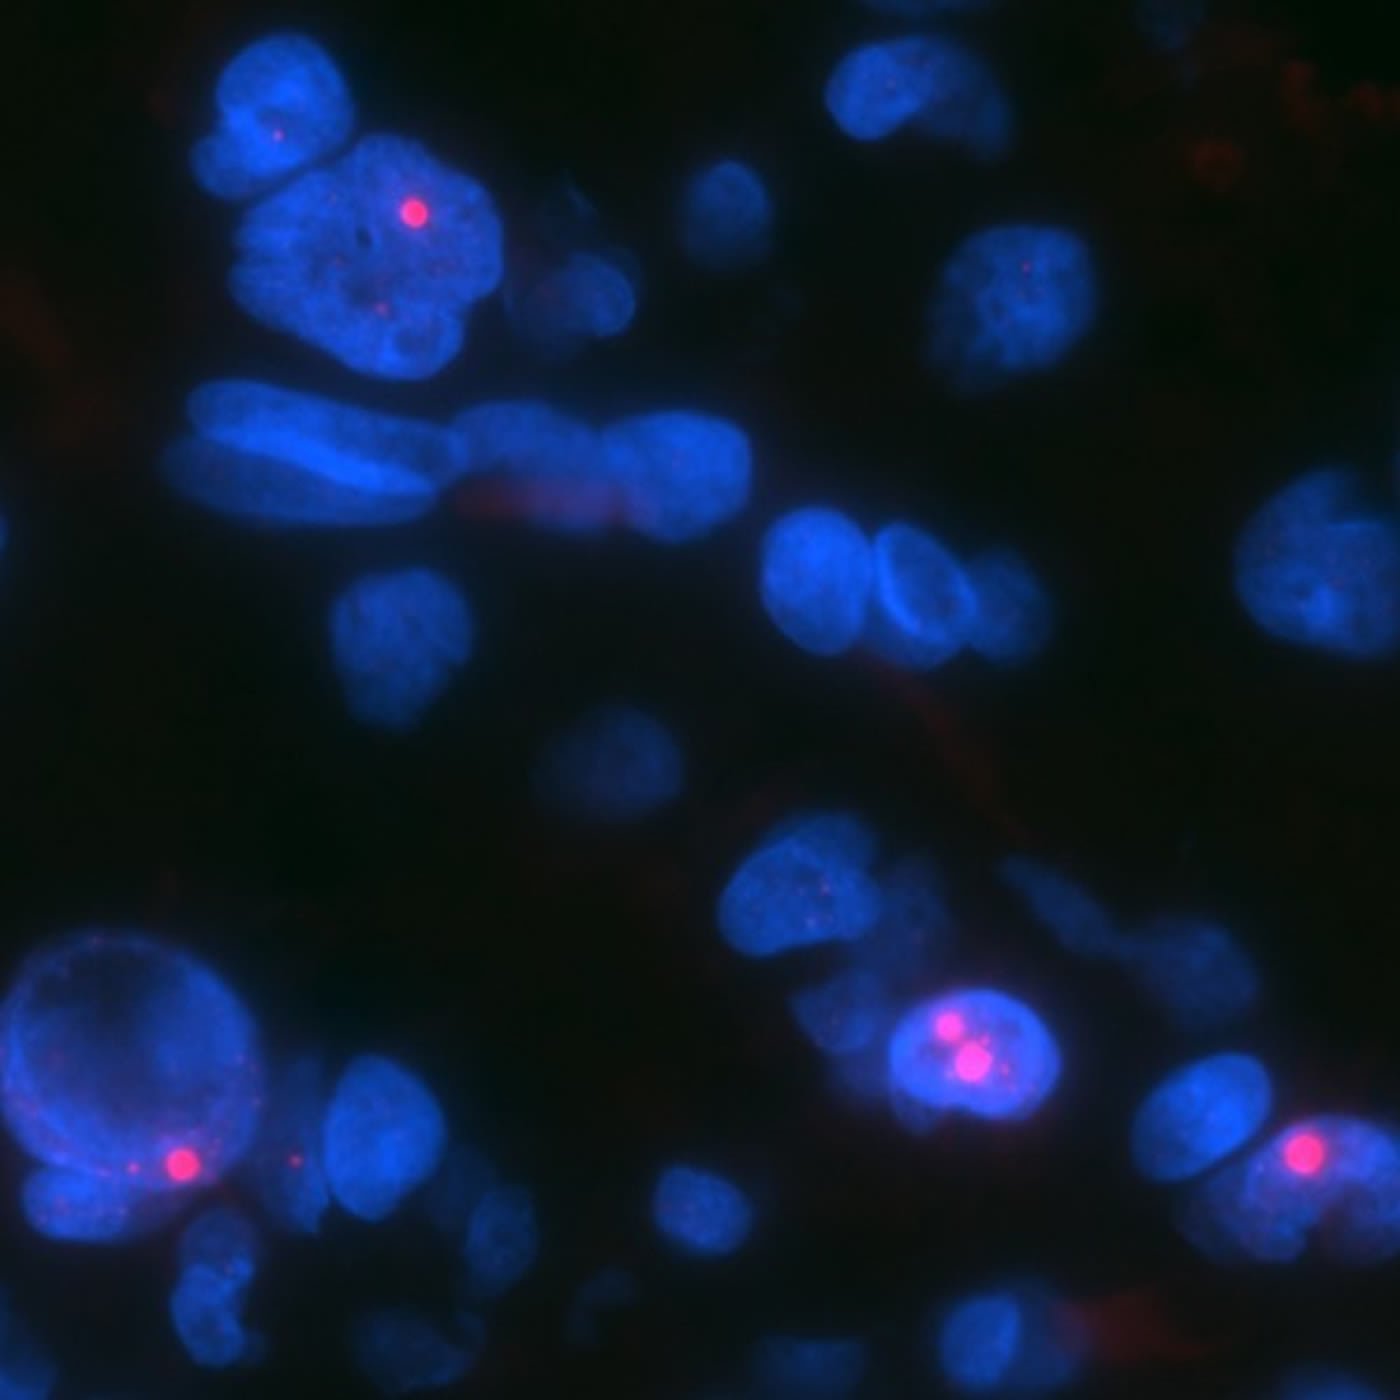 Image shows glioma cells.